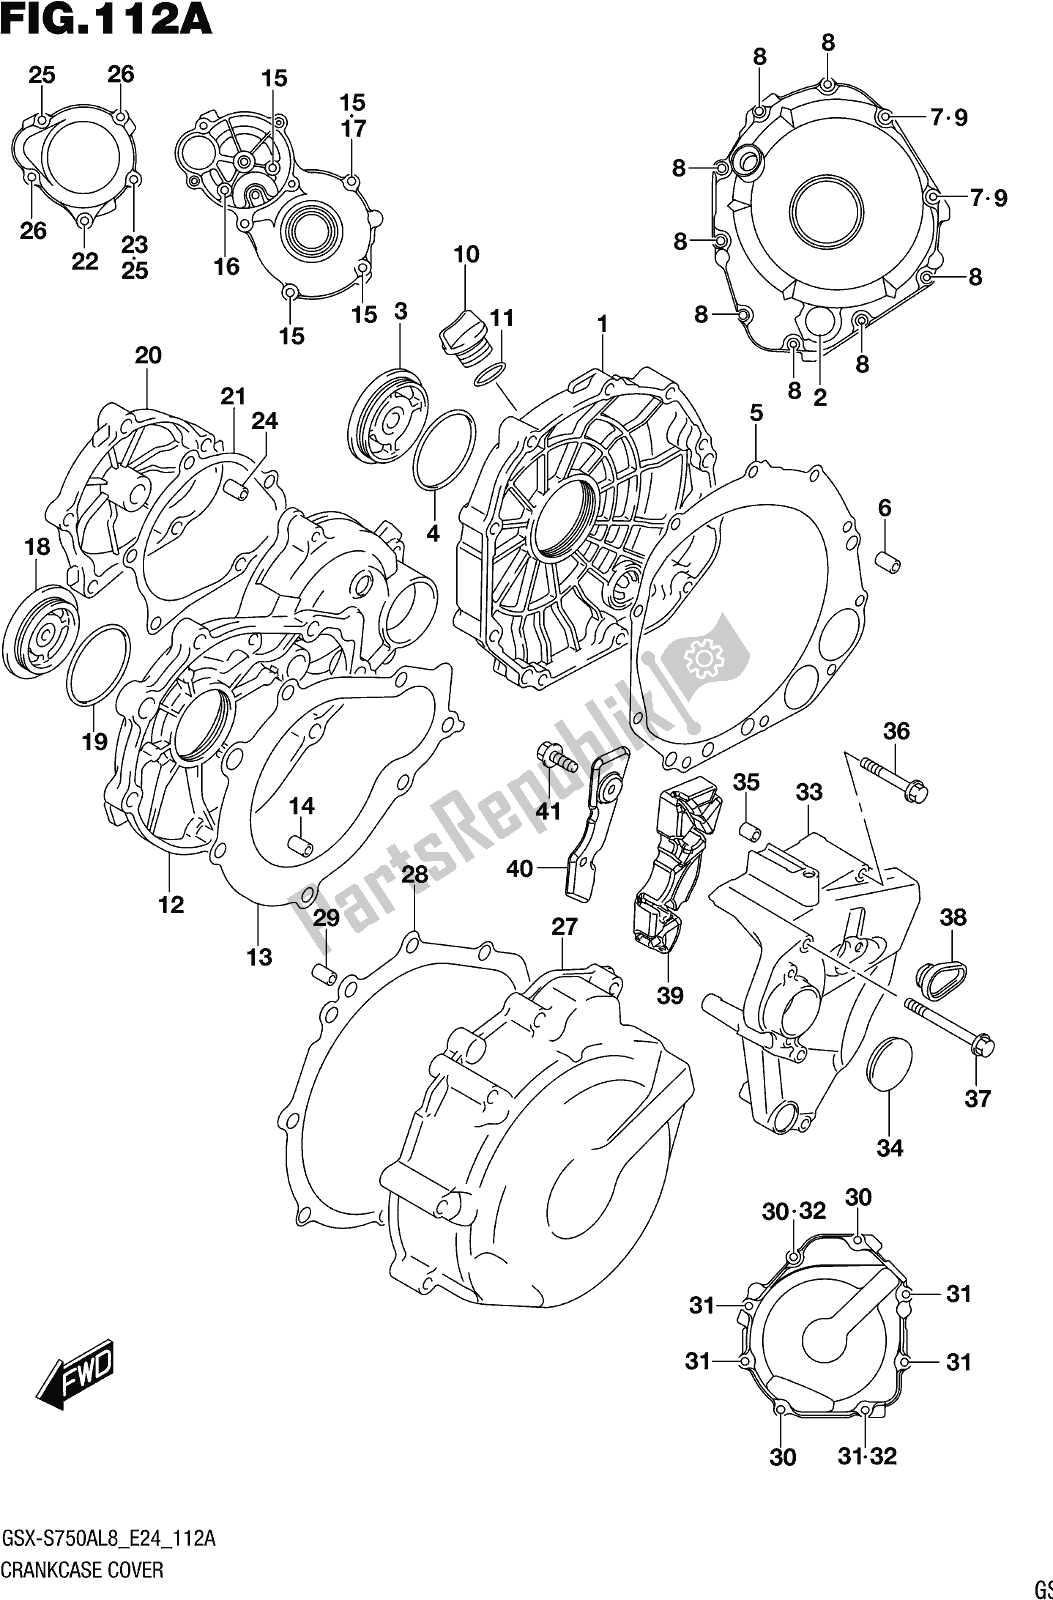 Alle onderdelen voor de Fig. 112a Crankcase Cover van de Suzuki Gsx-s 750 ZA 2018